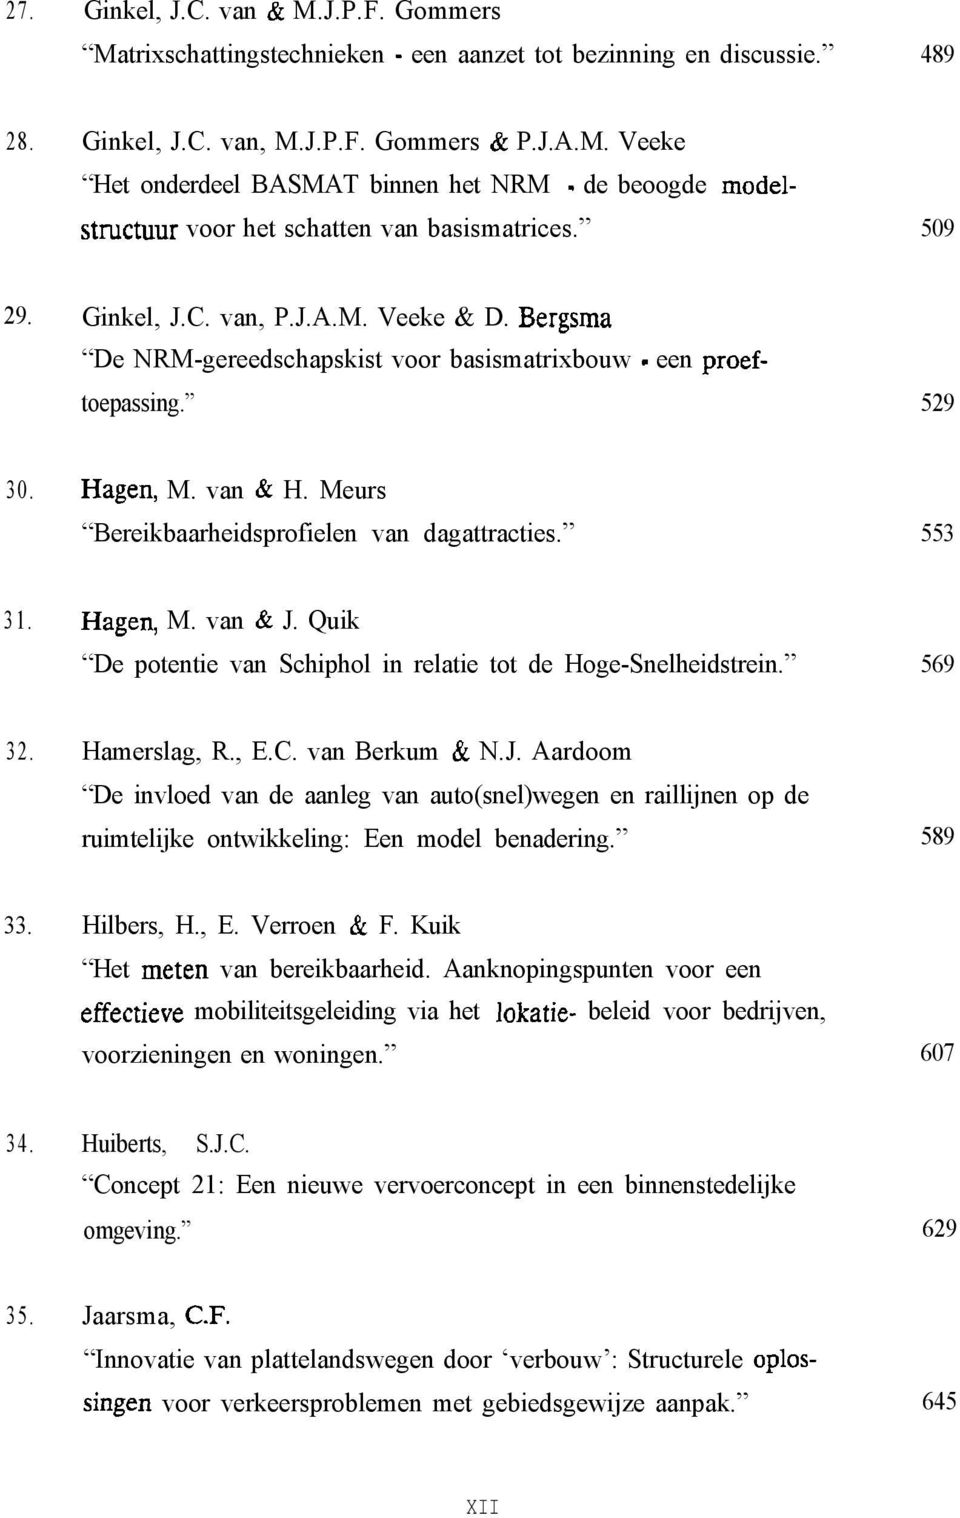 553 31. Hagen, M. van & J. Quik De potentie van Schiphol in relatie tot de Hoge-Snelheidstrein. 569 32. Hamerslag, R., E.C. van Berkum & N.J. Aardoom De invloed van de aanleg van auto(snel)wegen en raillijnen op de ruimtelijke ontwikkeling: Een model benadering.